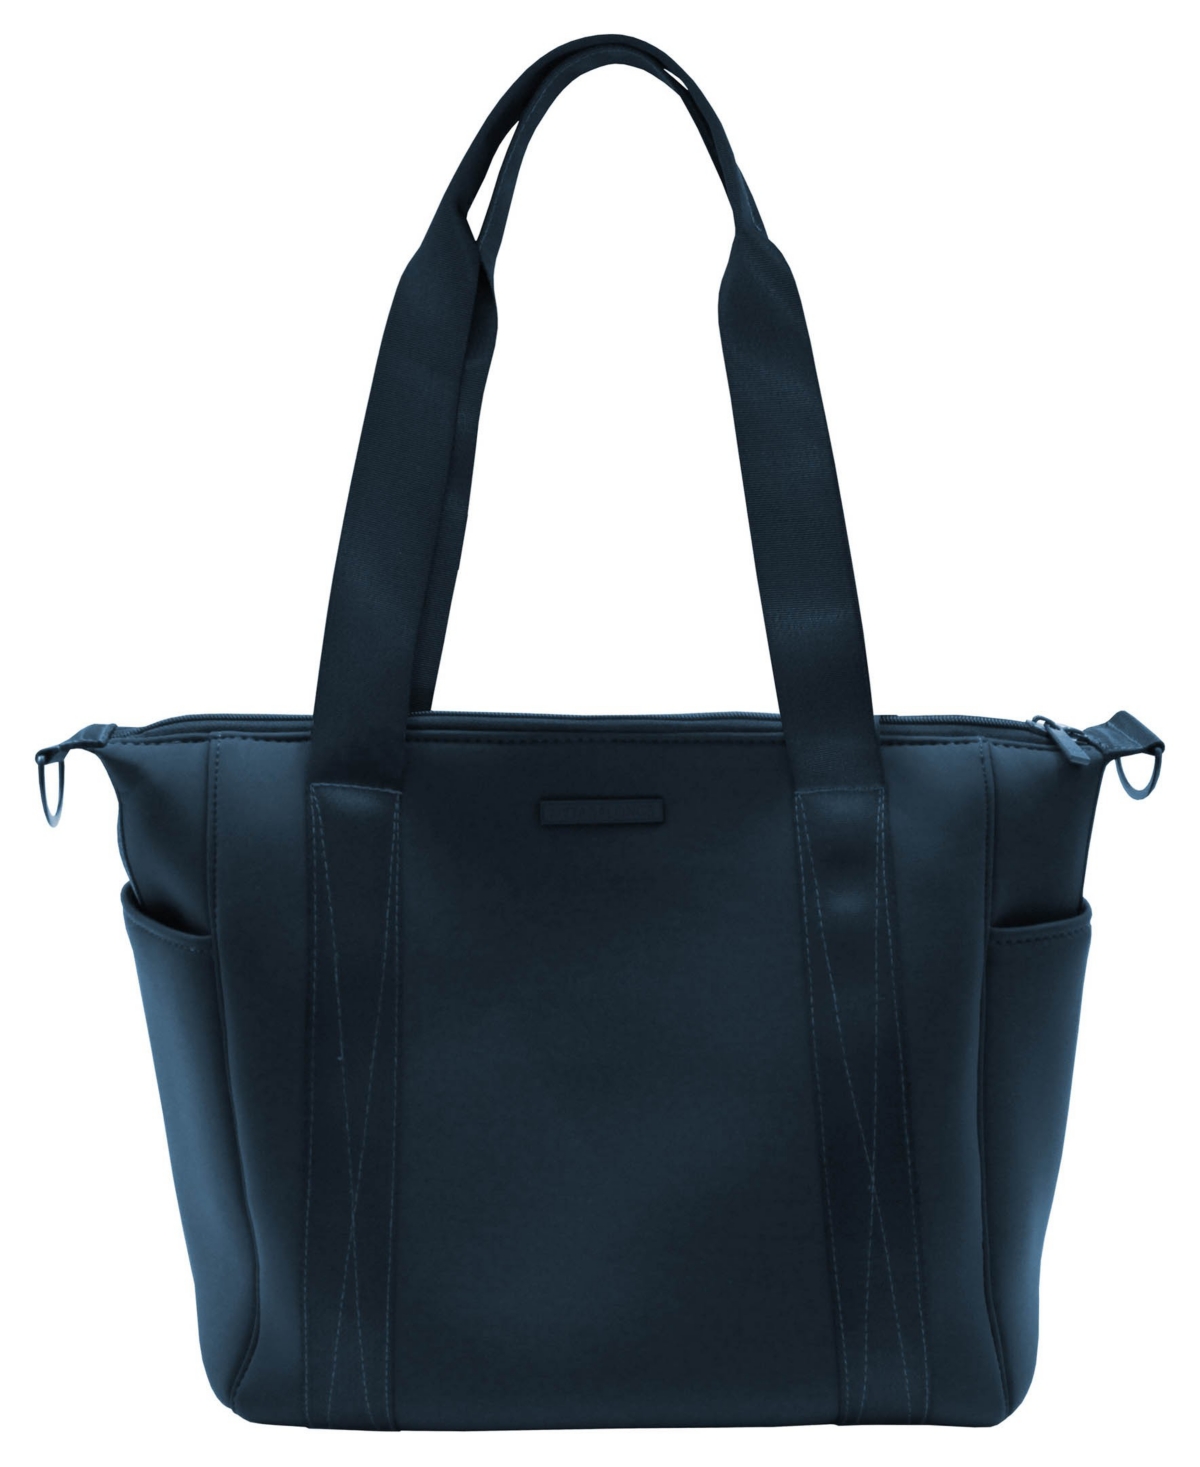 Mytagalongs Women's Everleigh Commuter Bag